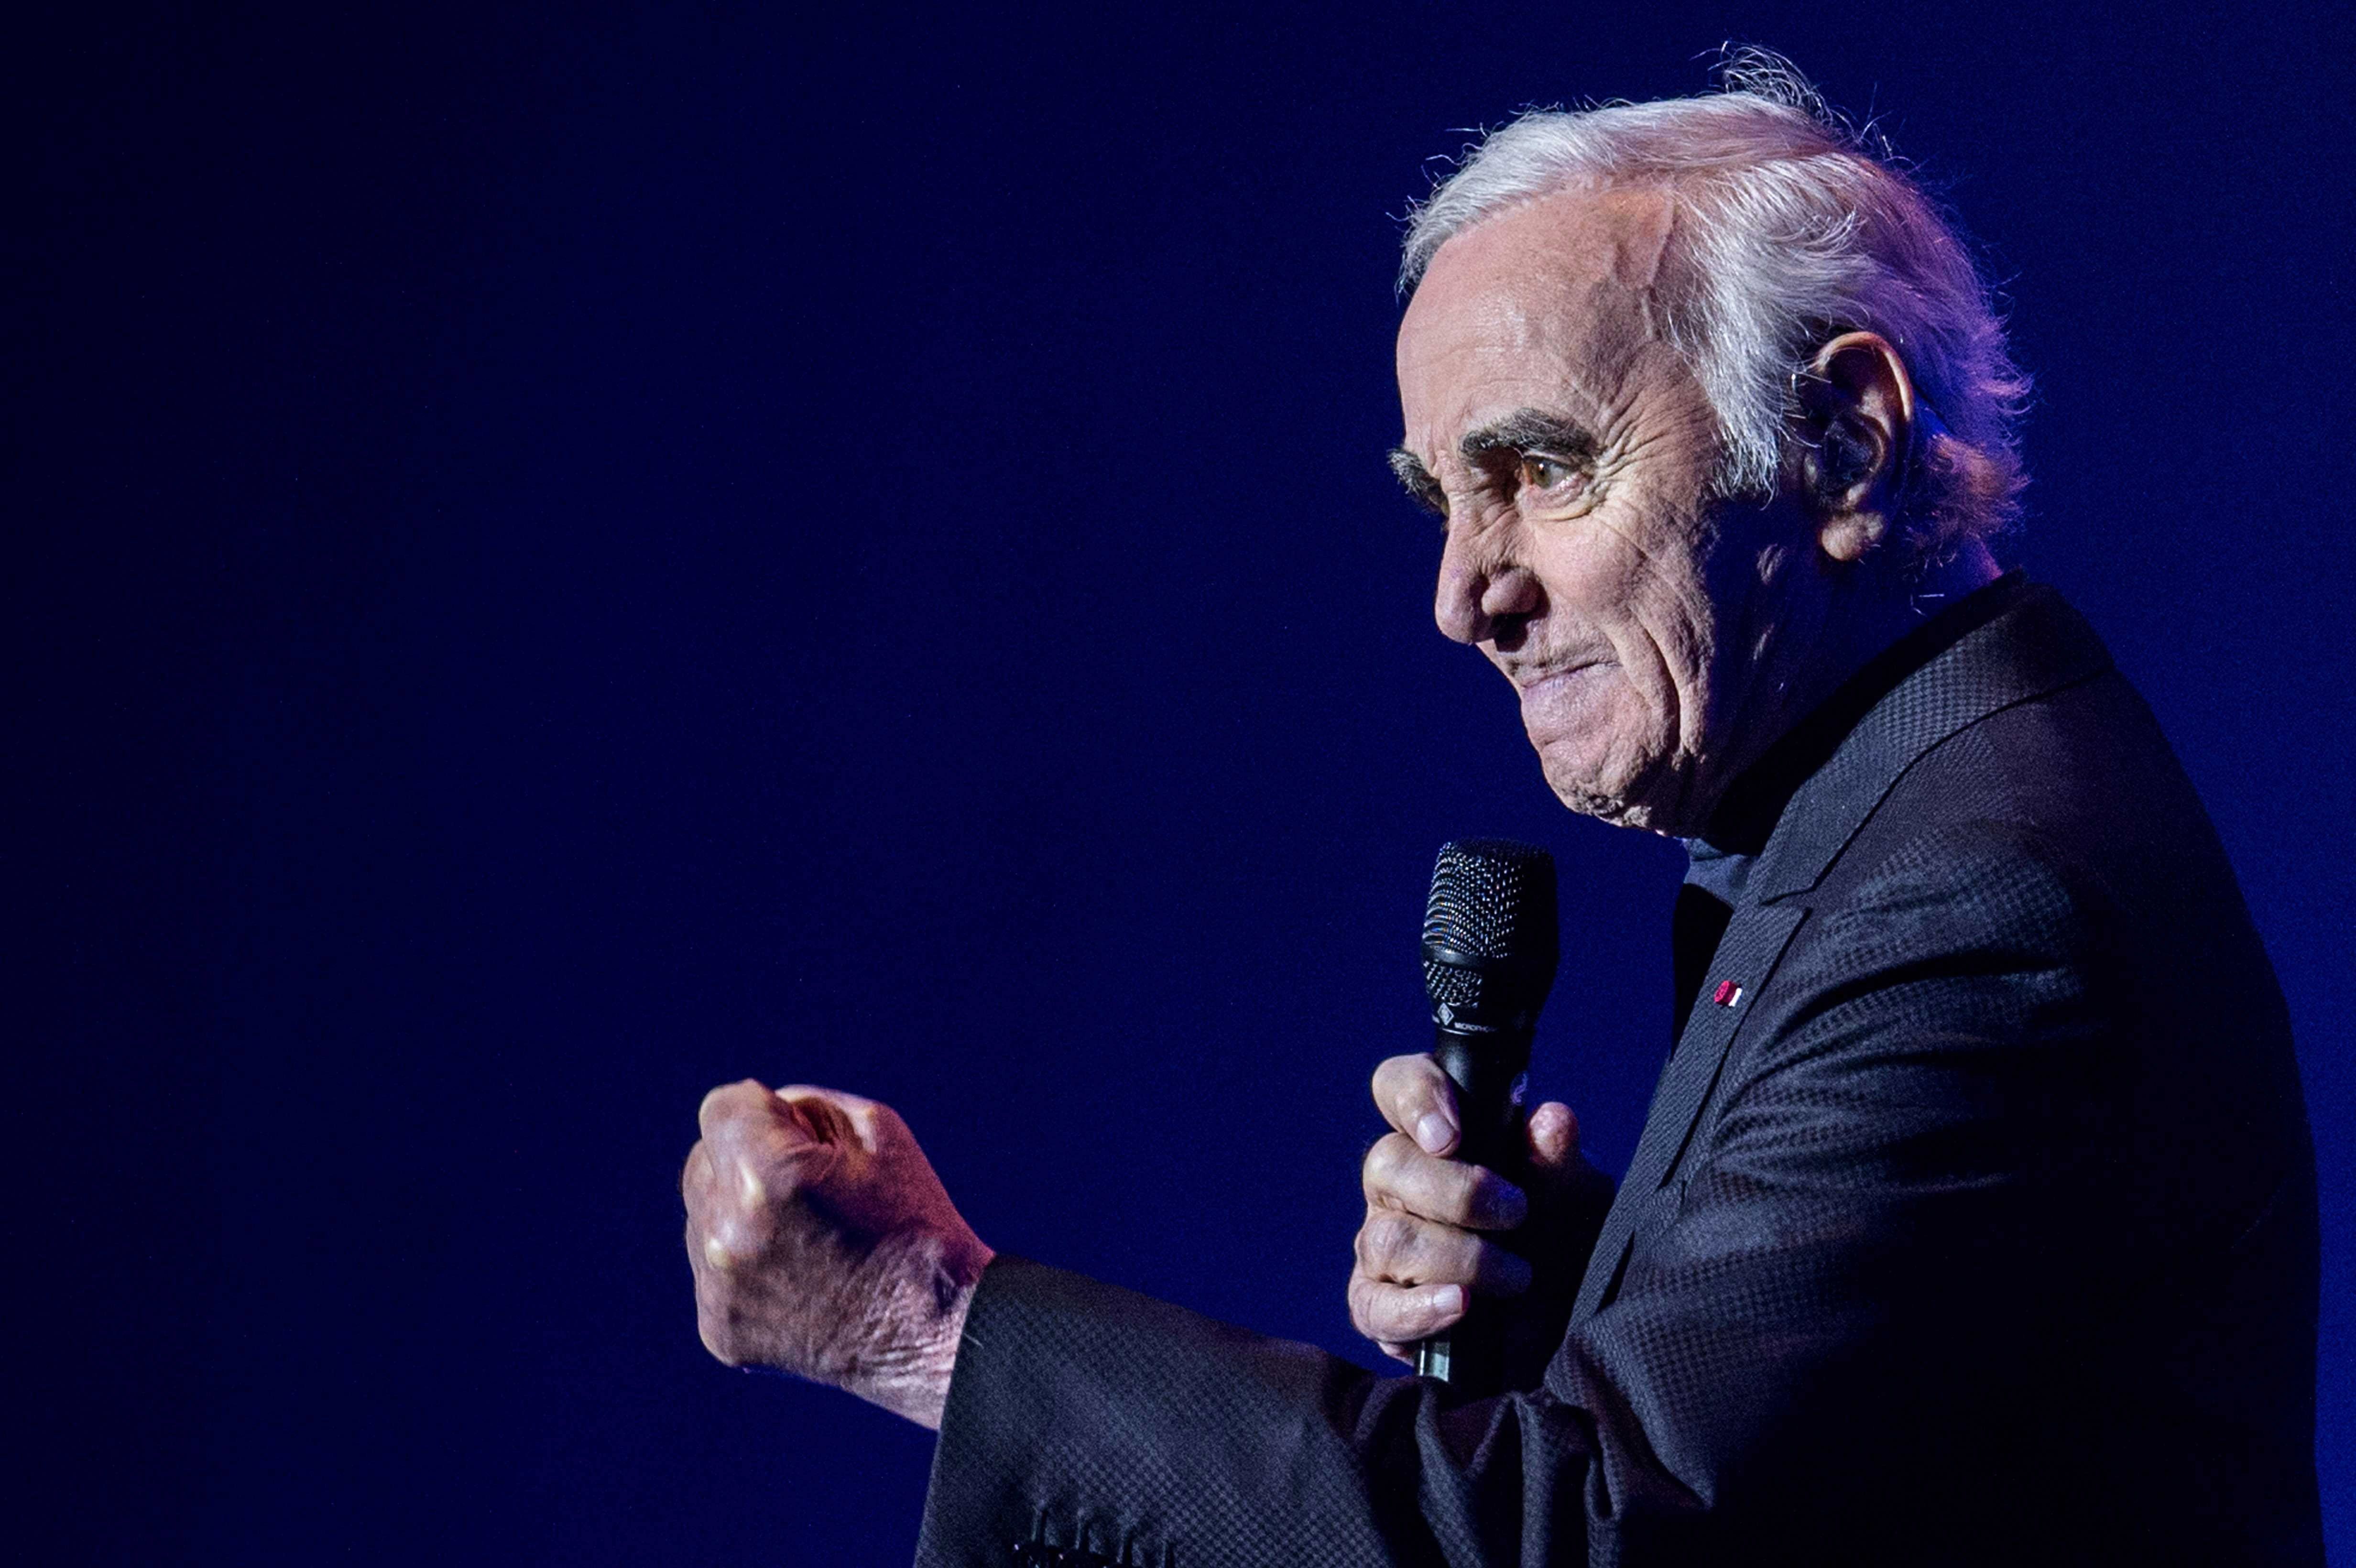  Fallece el cantante francés Charles Aznavour a los 94 años